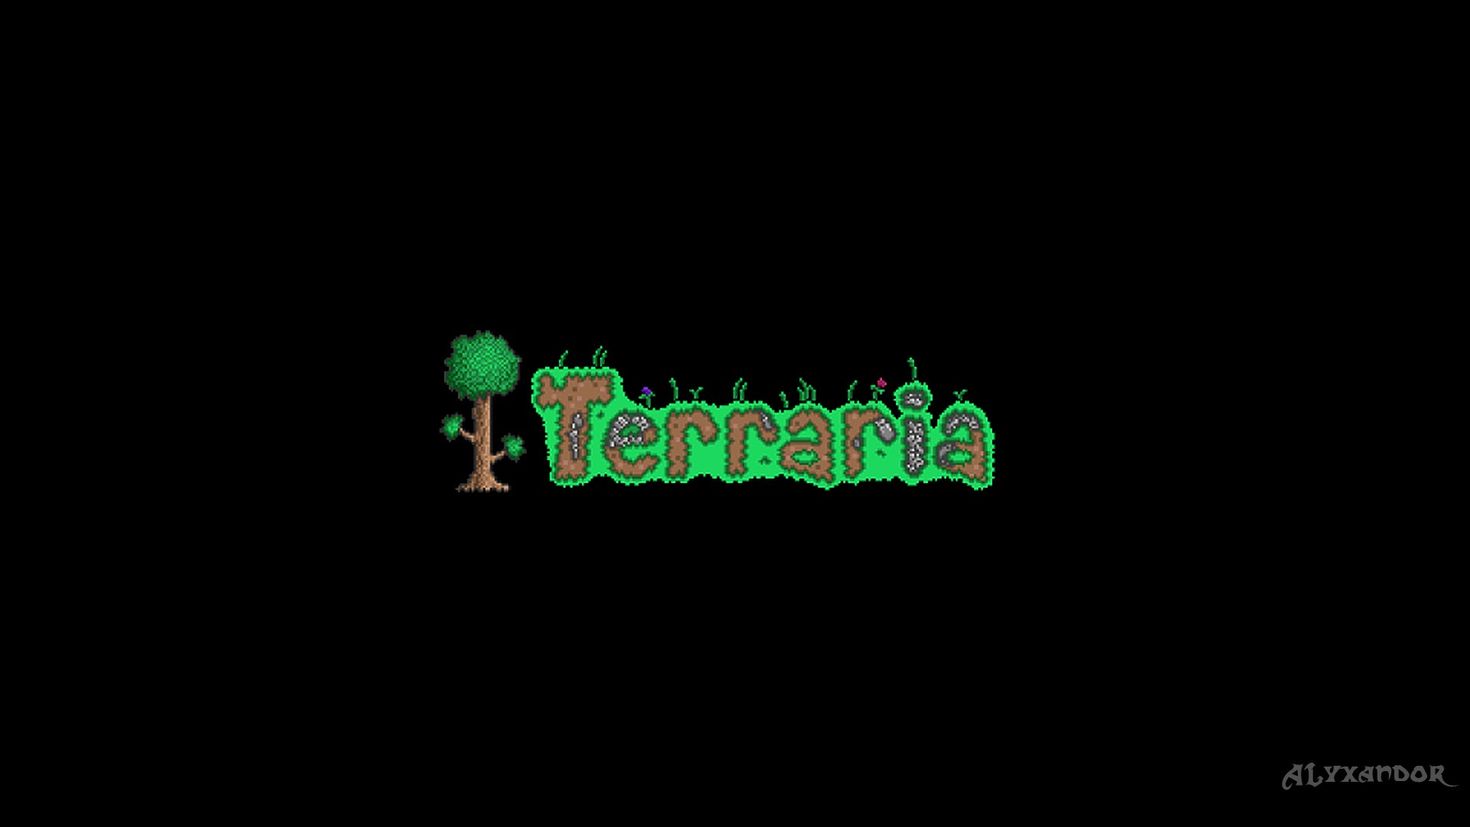 Terraria soundtrack download фото 89